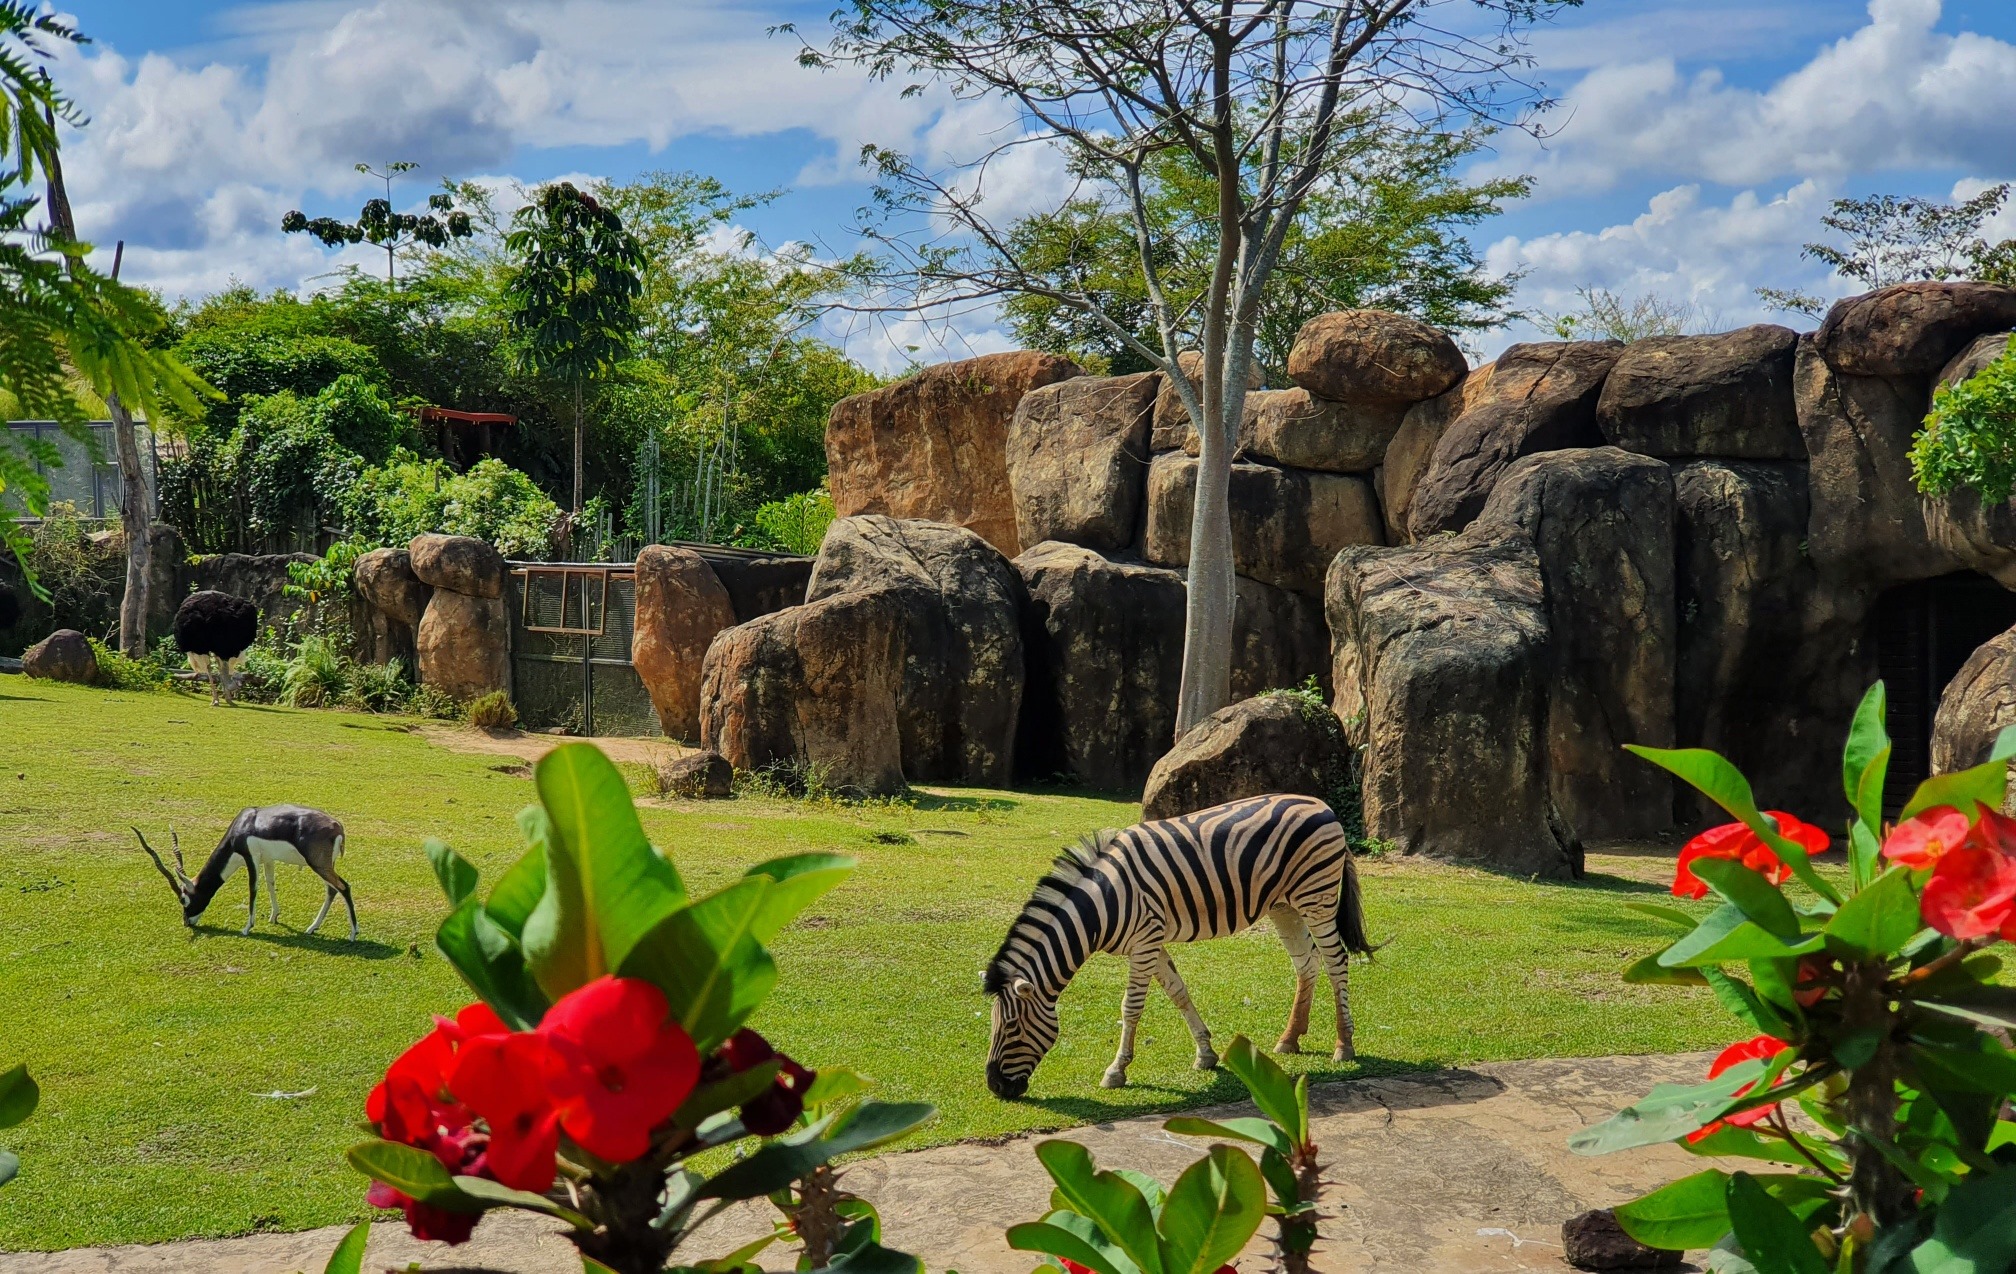 Zebras - BioParque Ukumarí - Planea tu viaje a Colombia con ColombiaTours.Travel